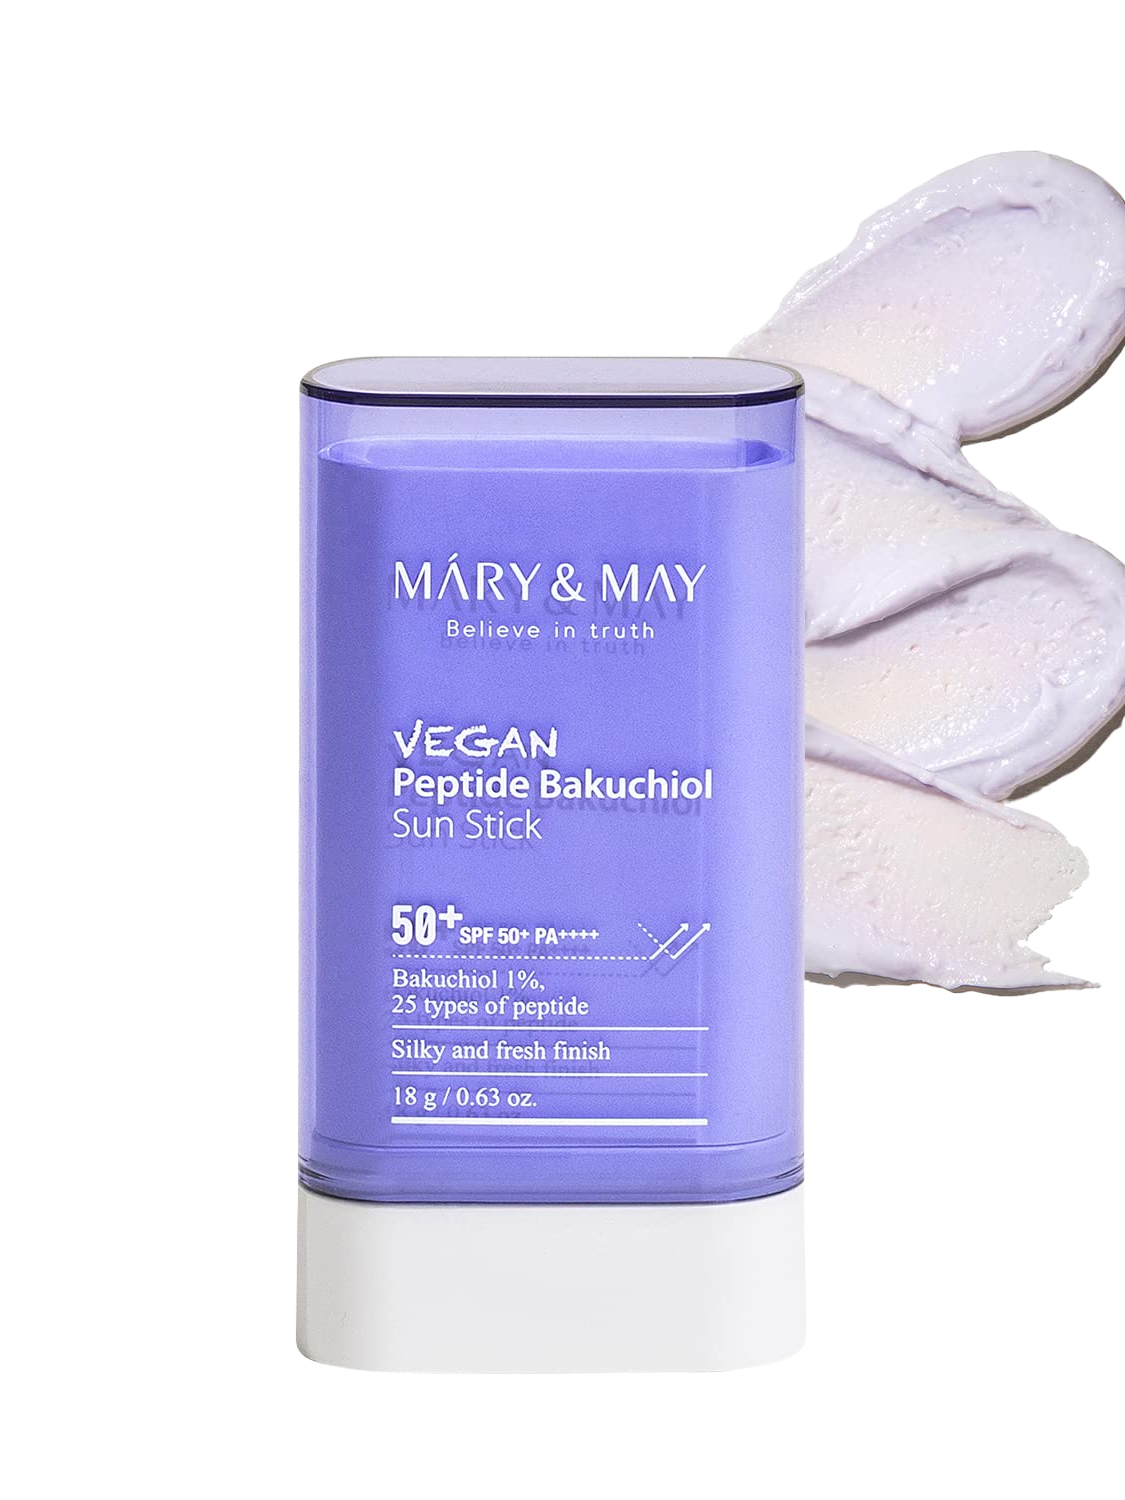 Mary & May Vegan Peptide Bakuchiol Sun Stick SPF50+ PA++++